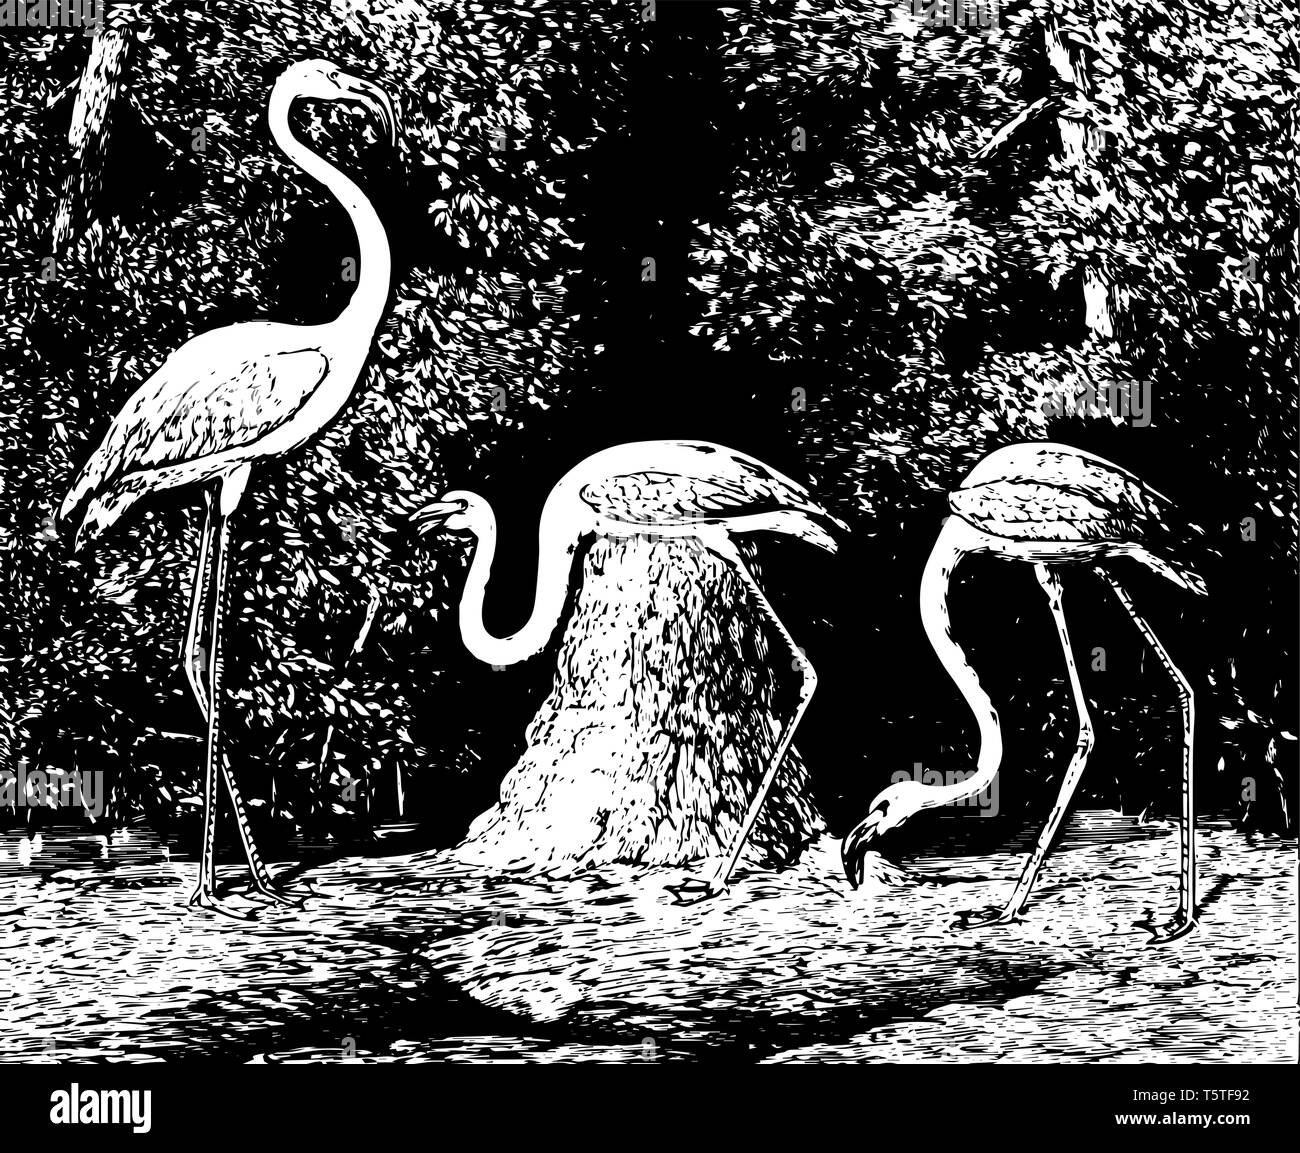 American Flamingo 42 pollici di grandi dimensioni con 5 piedi ali linea vintage disegno. Illustrazione Vettoriale